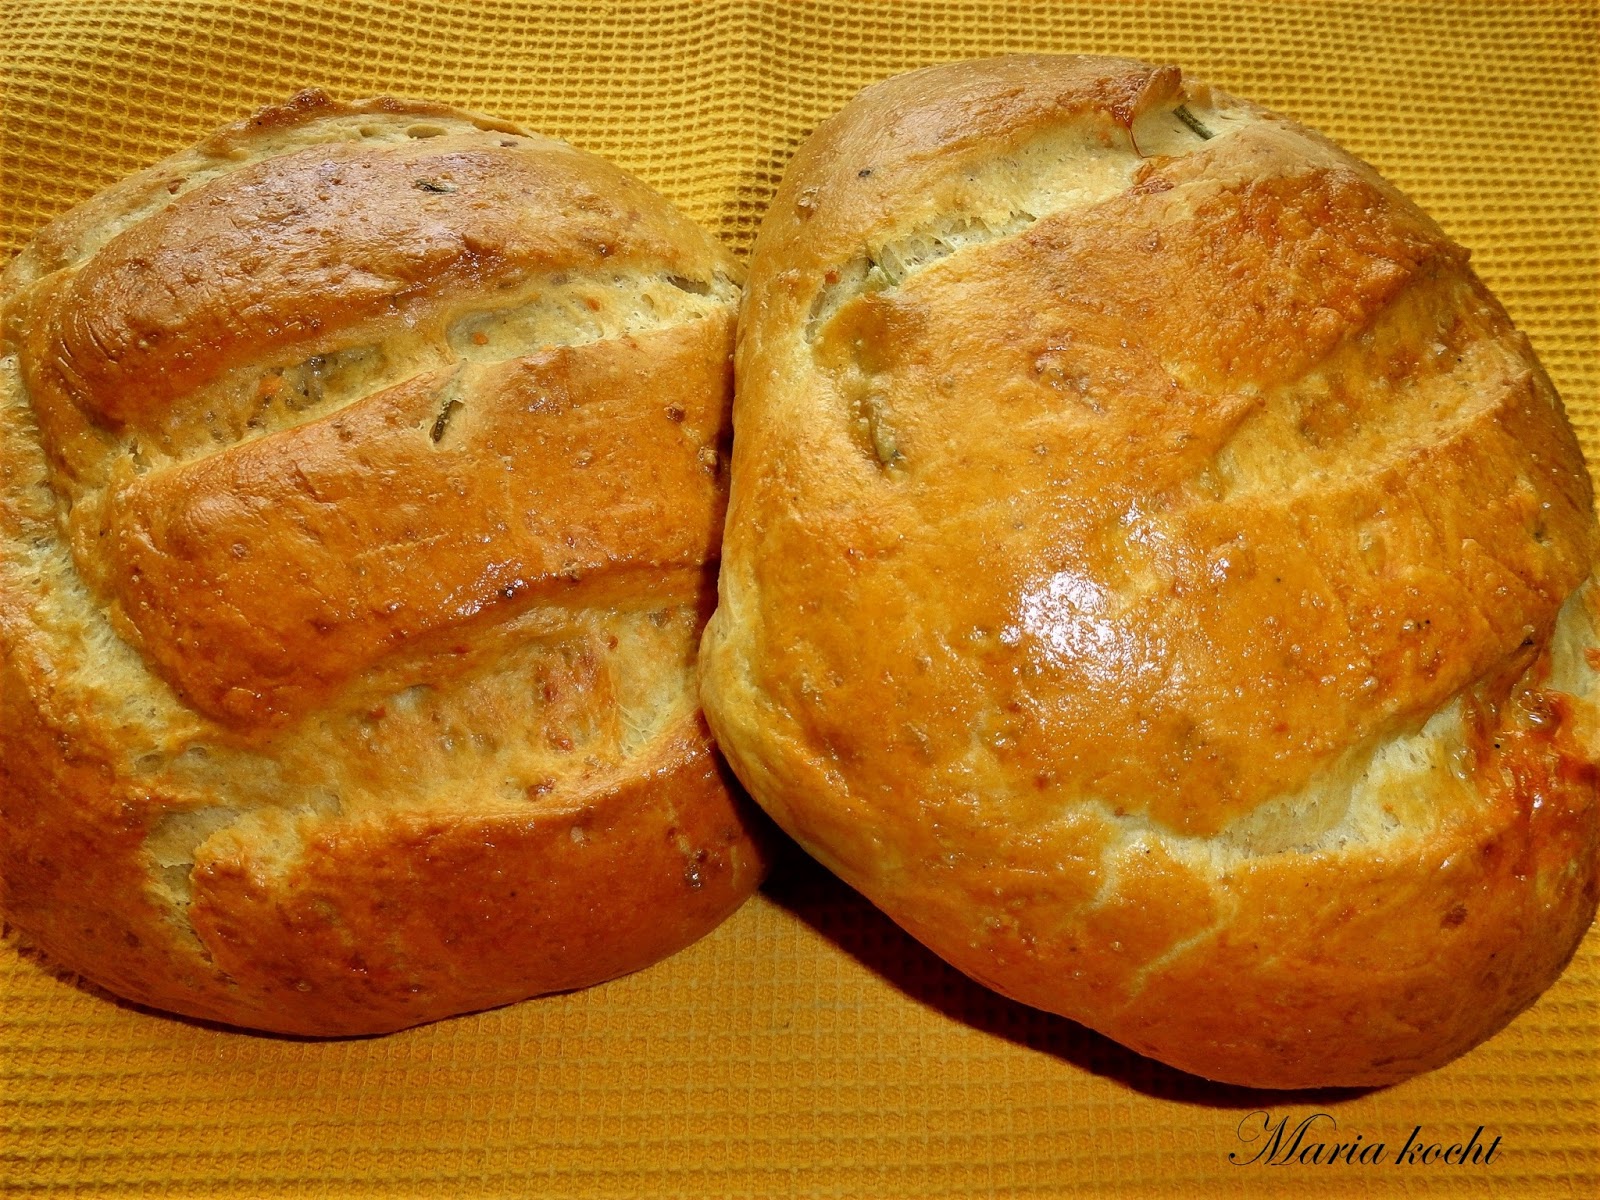 Maria kocht: Feta-Brot / Fetás kenyér